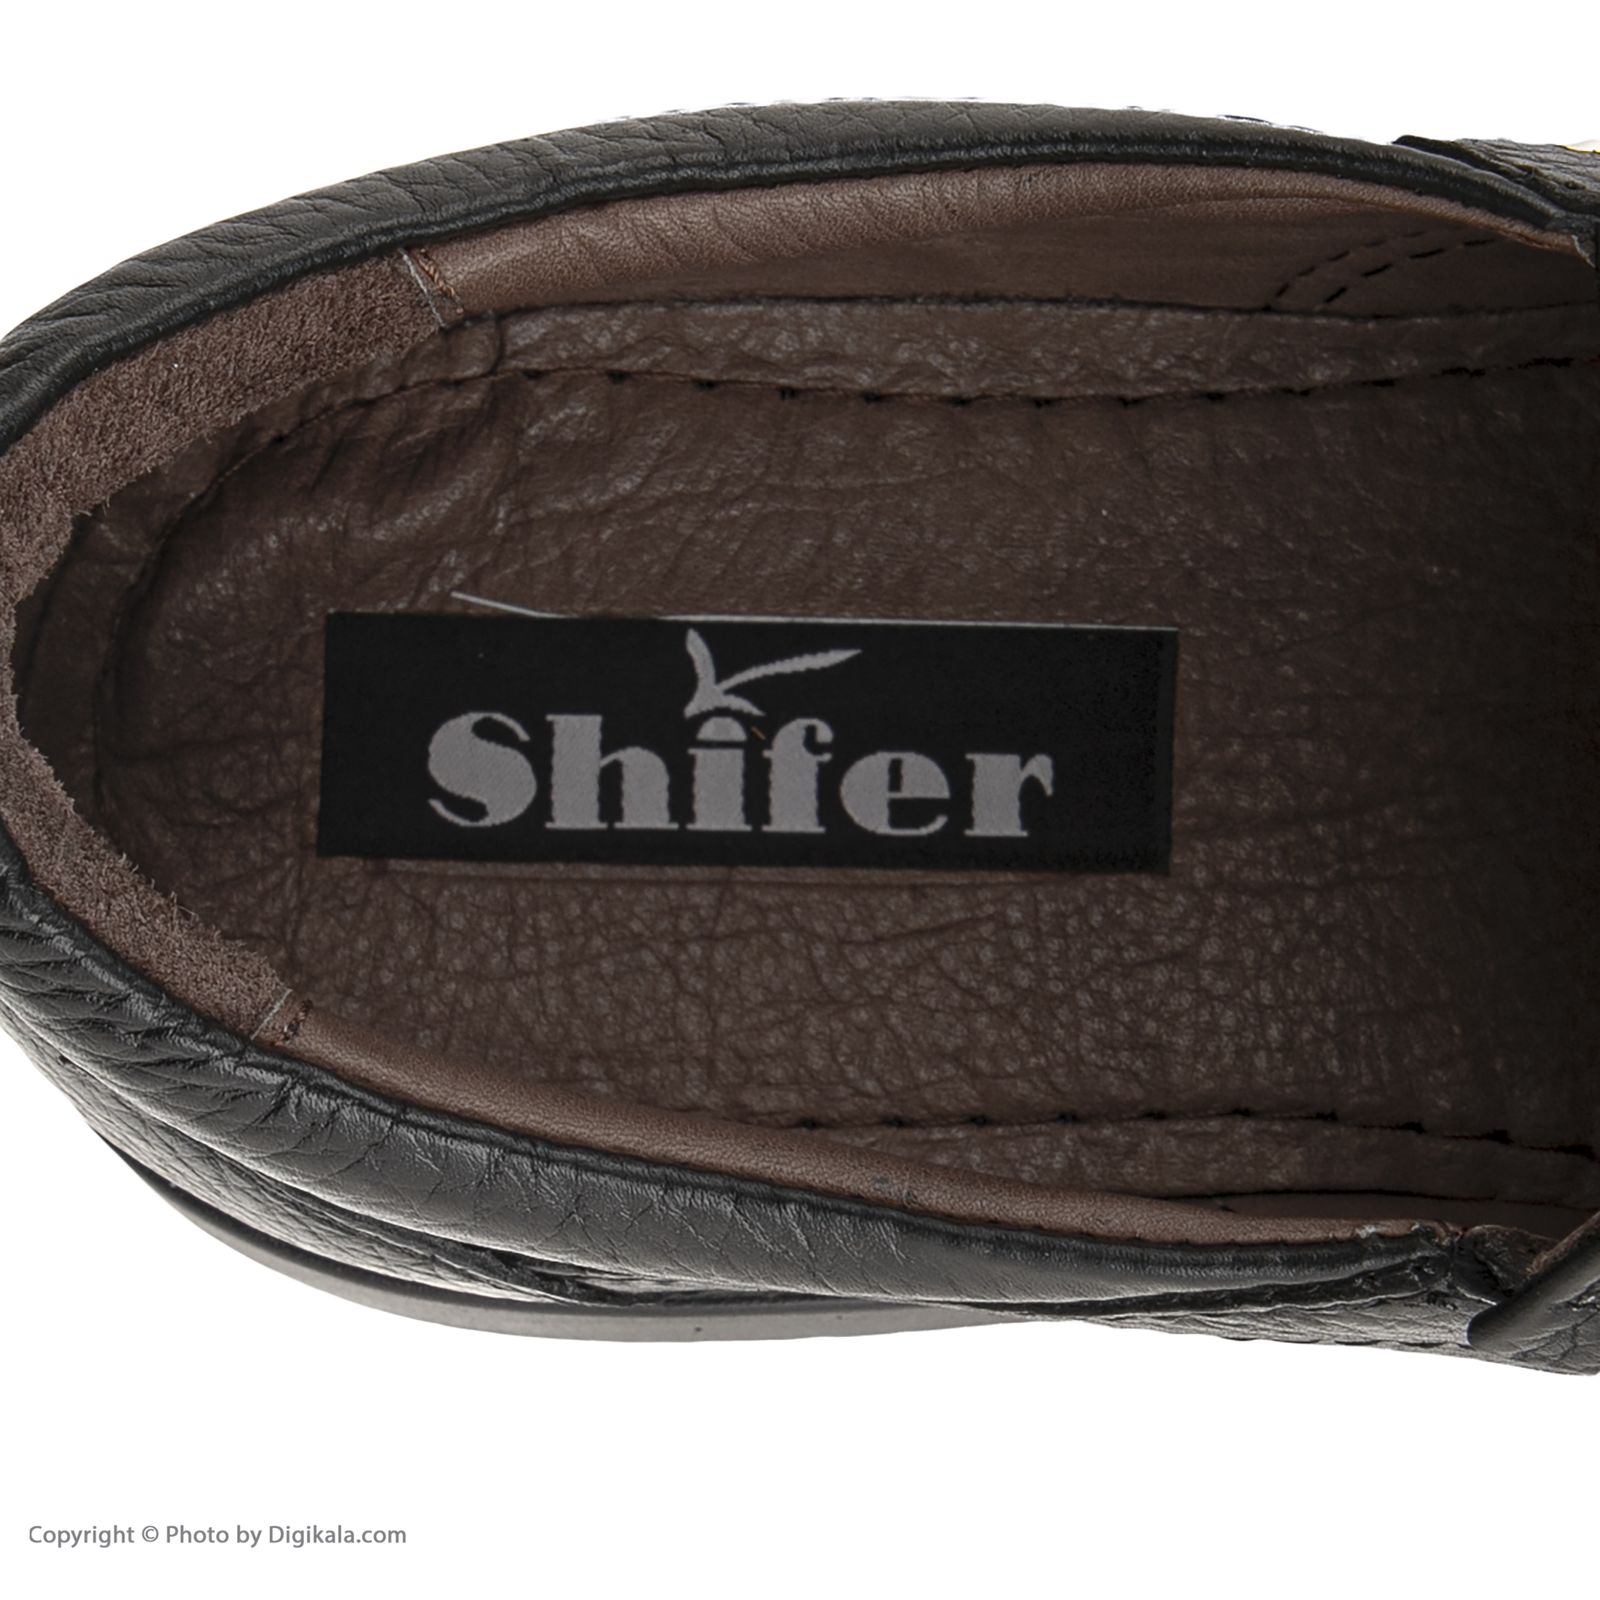 کفش روزمره مردانه شیفر مدل 7364c503101101 -  - 7